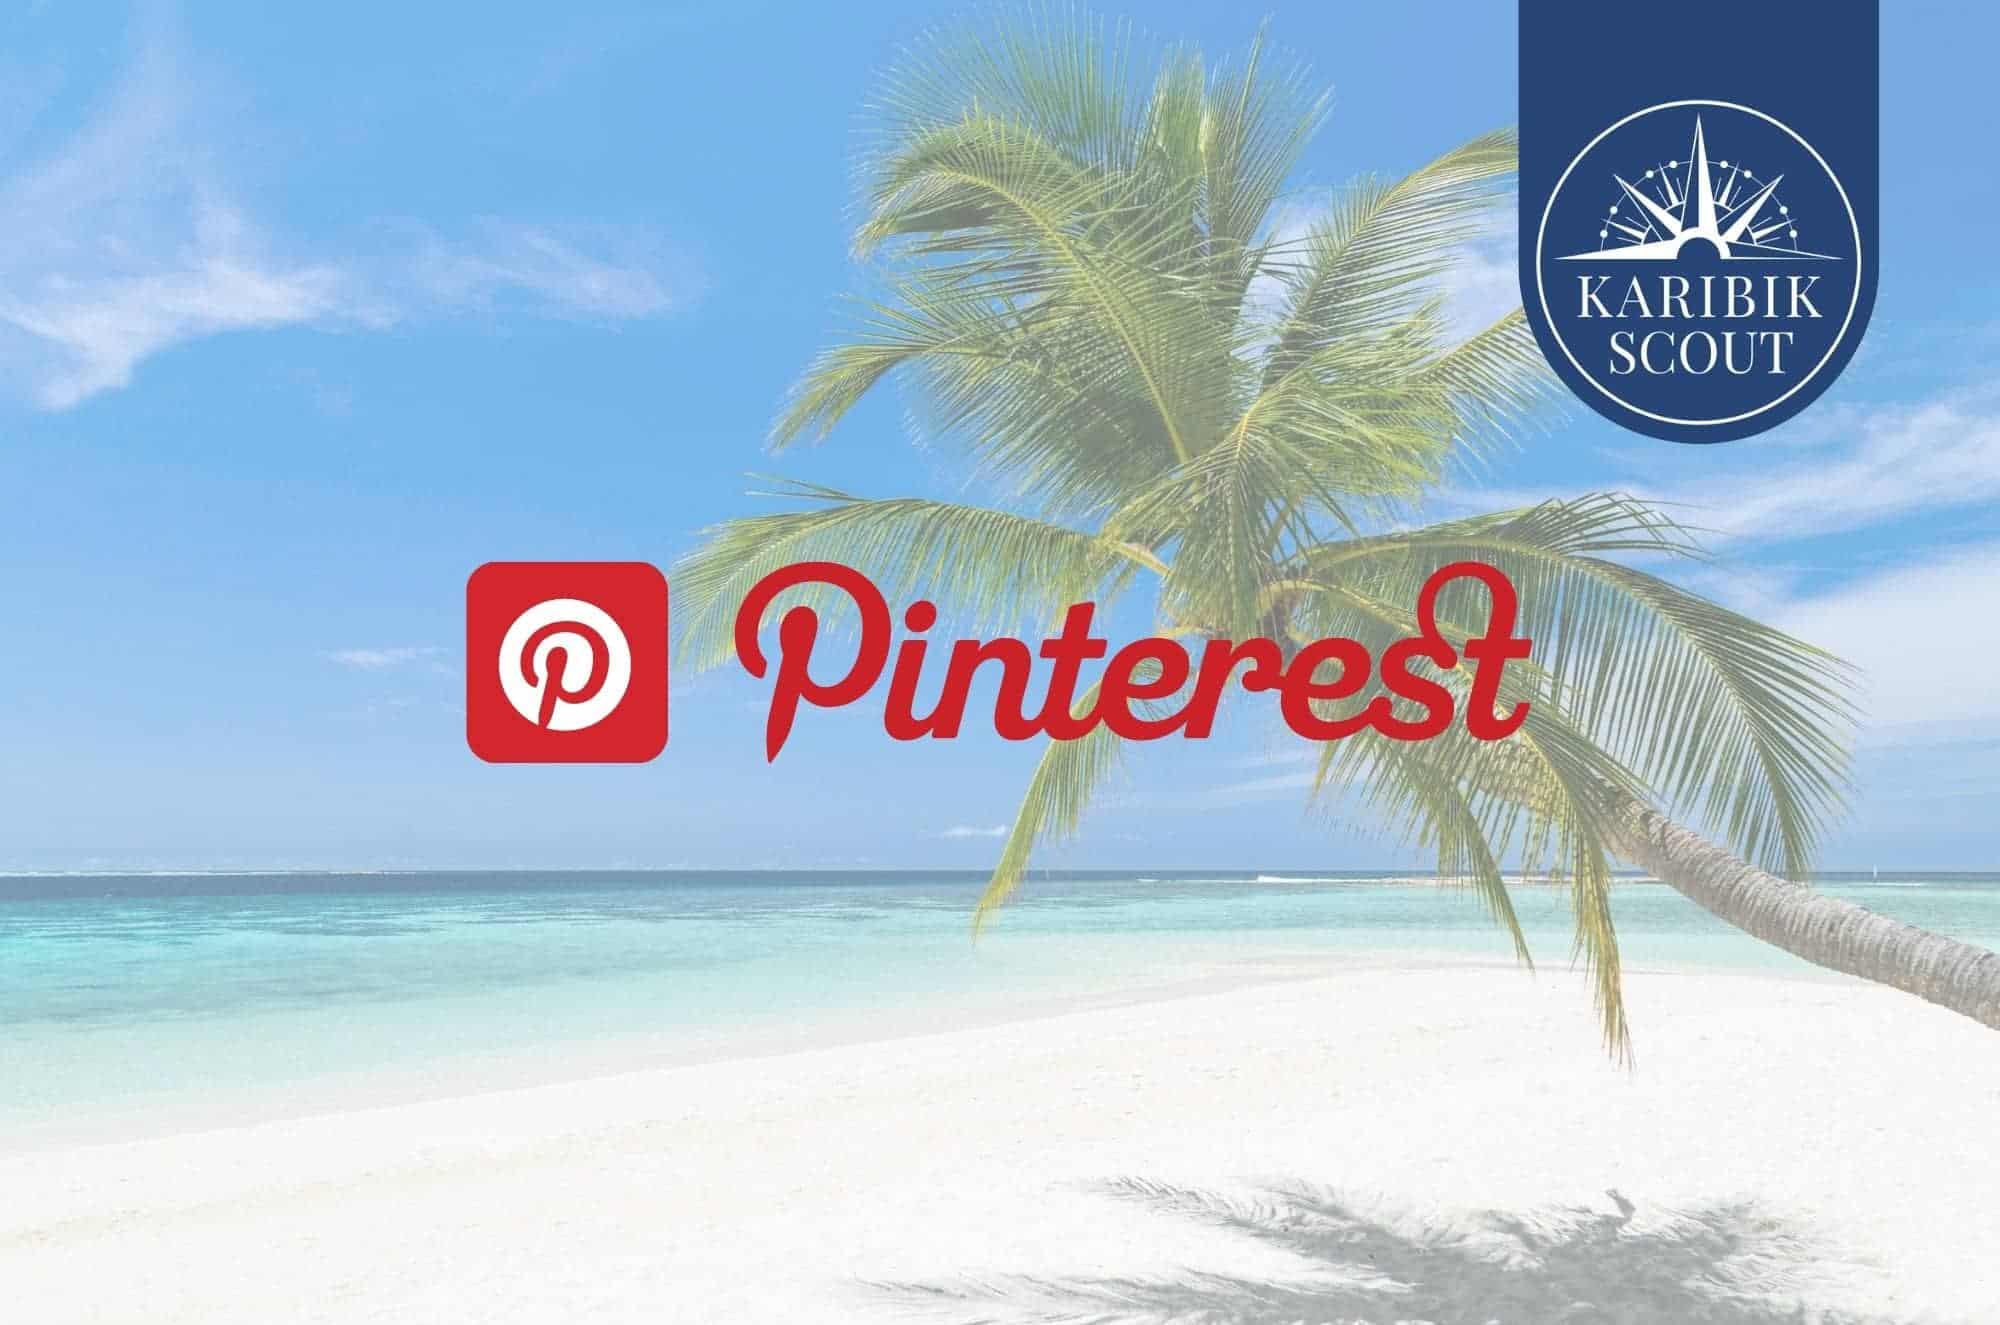 Karibikscout ist jetzt auch auf Pinterest